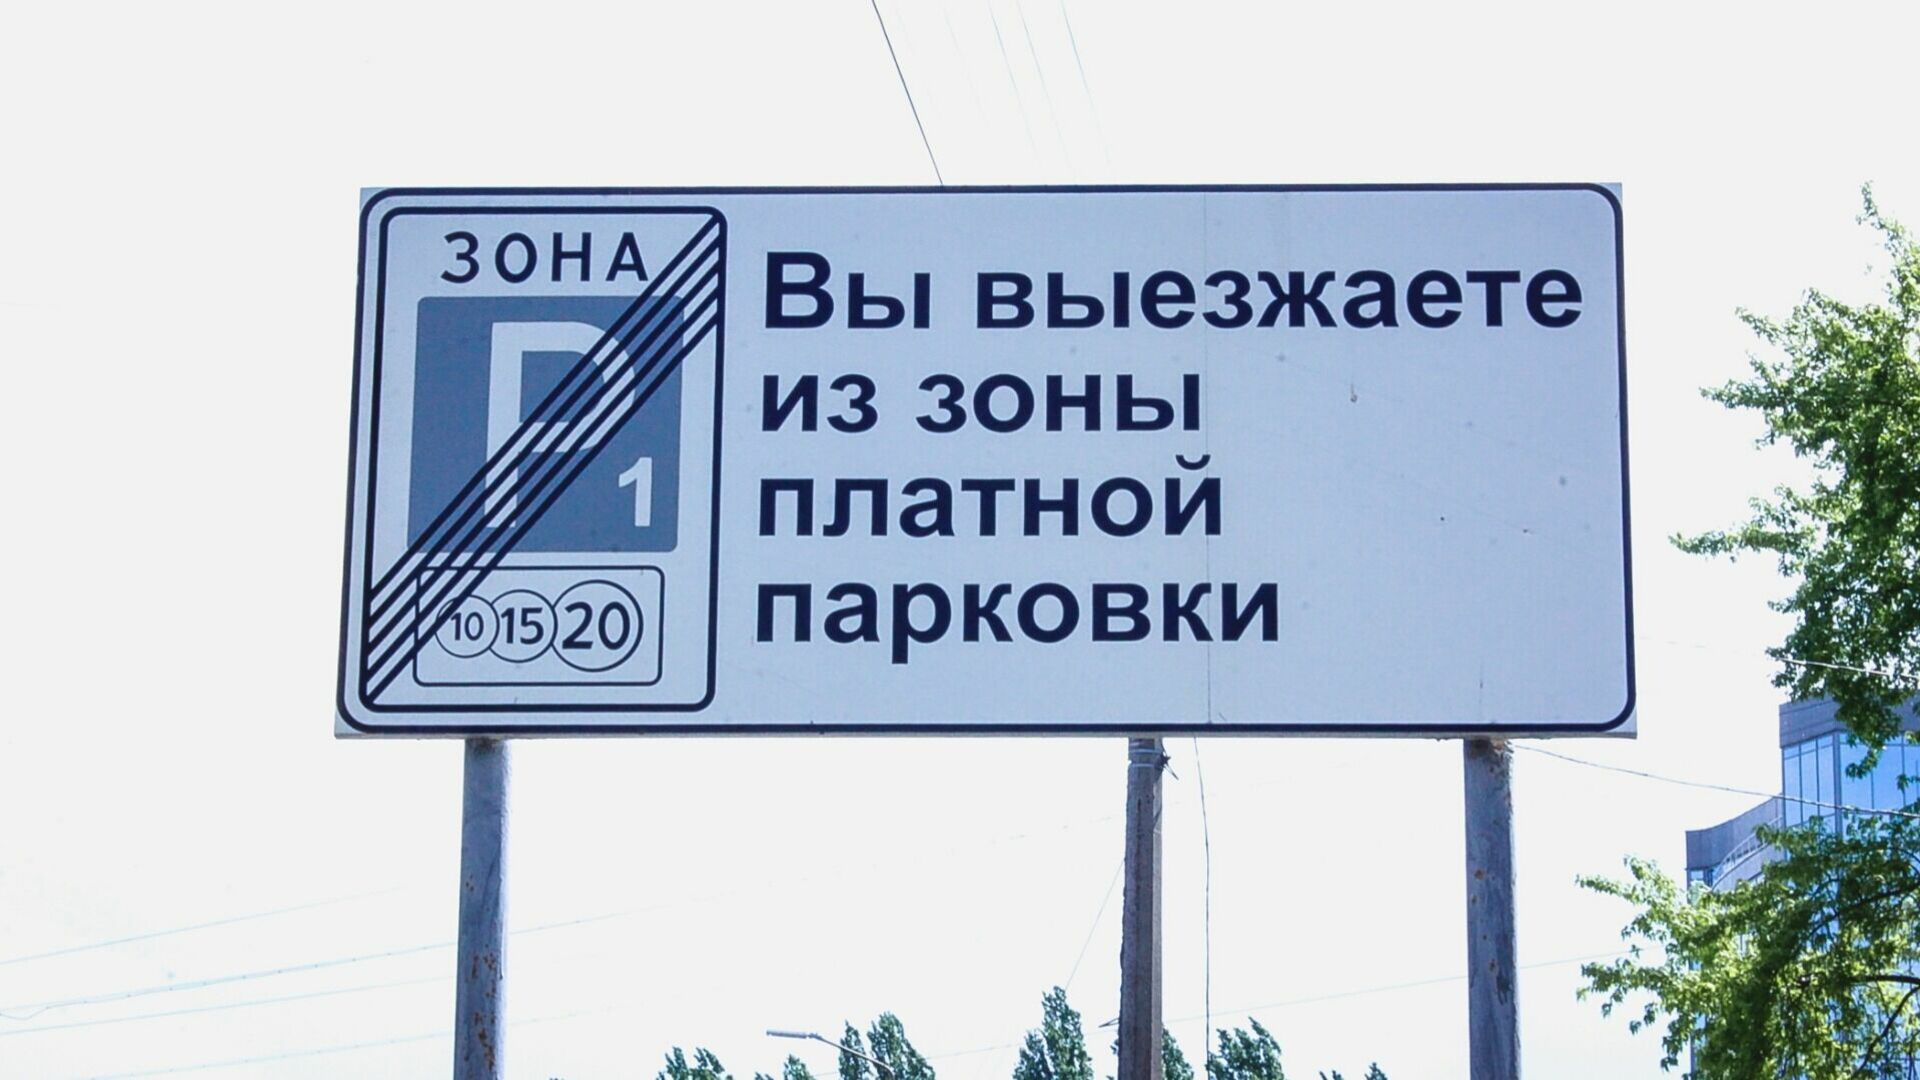 Власти Воронежа проведут аудиторскую проверку в «Городских парковках» Жернового